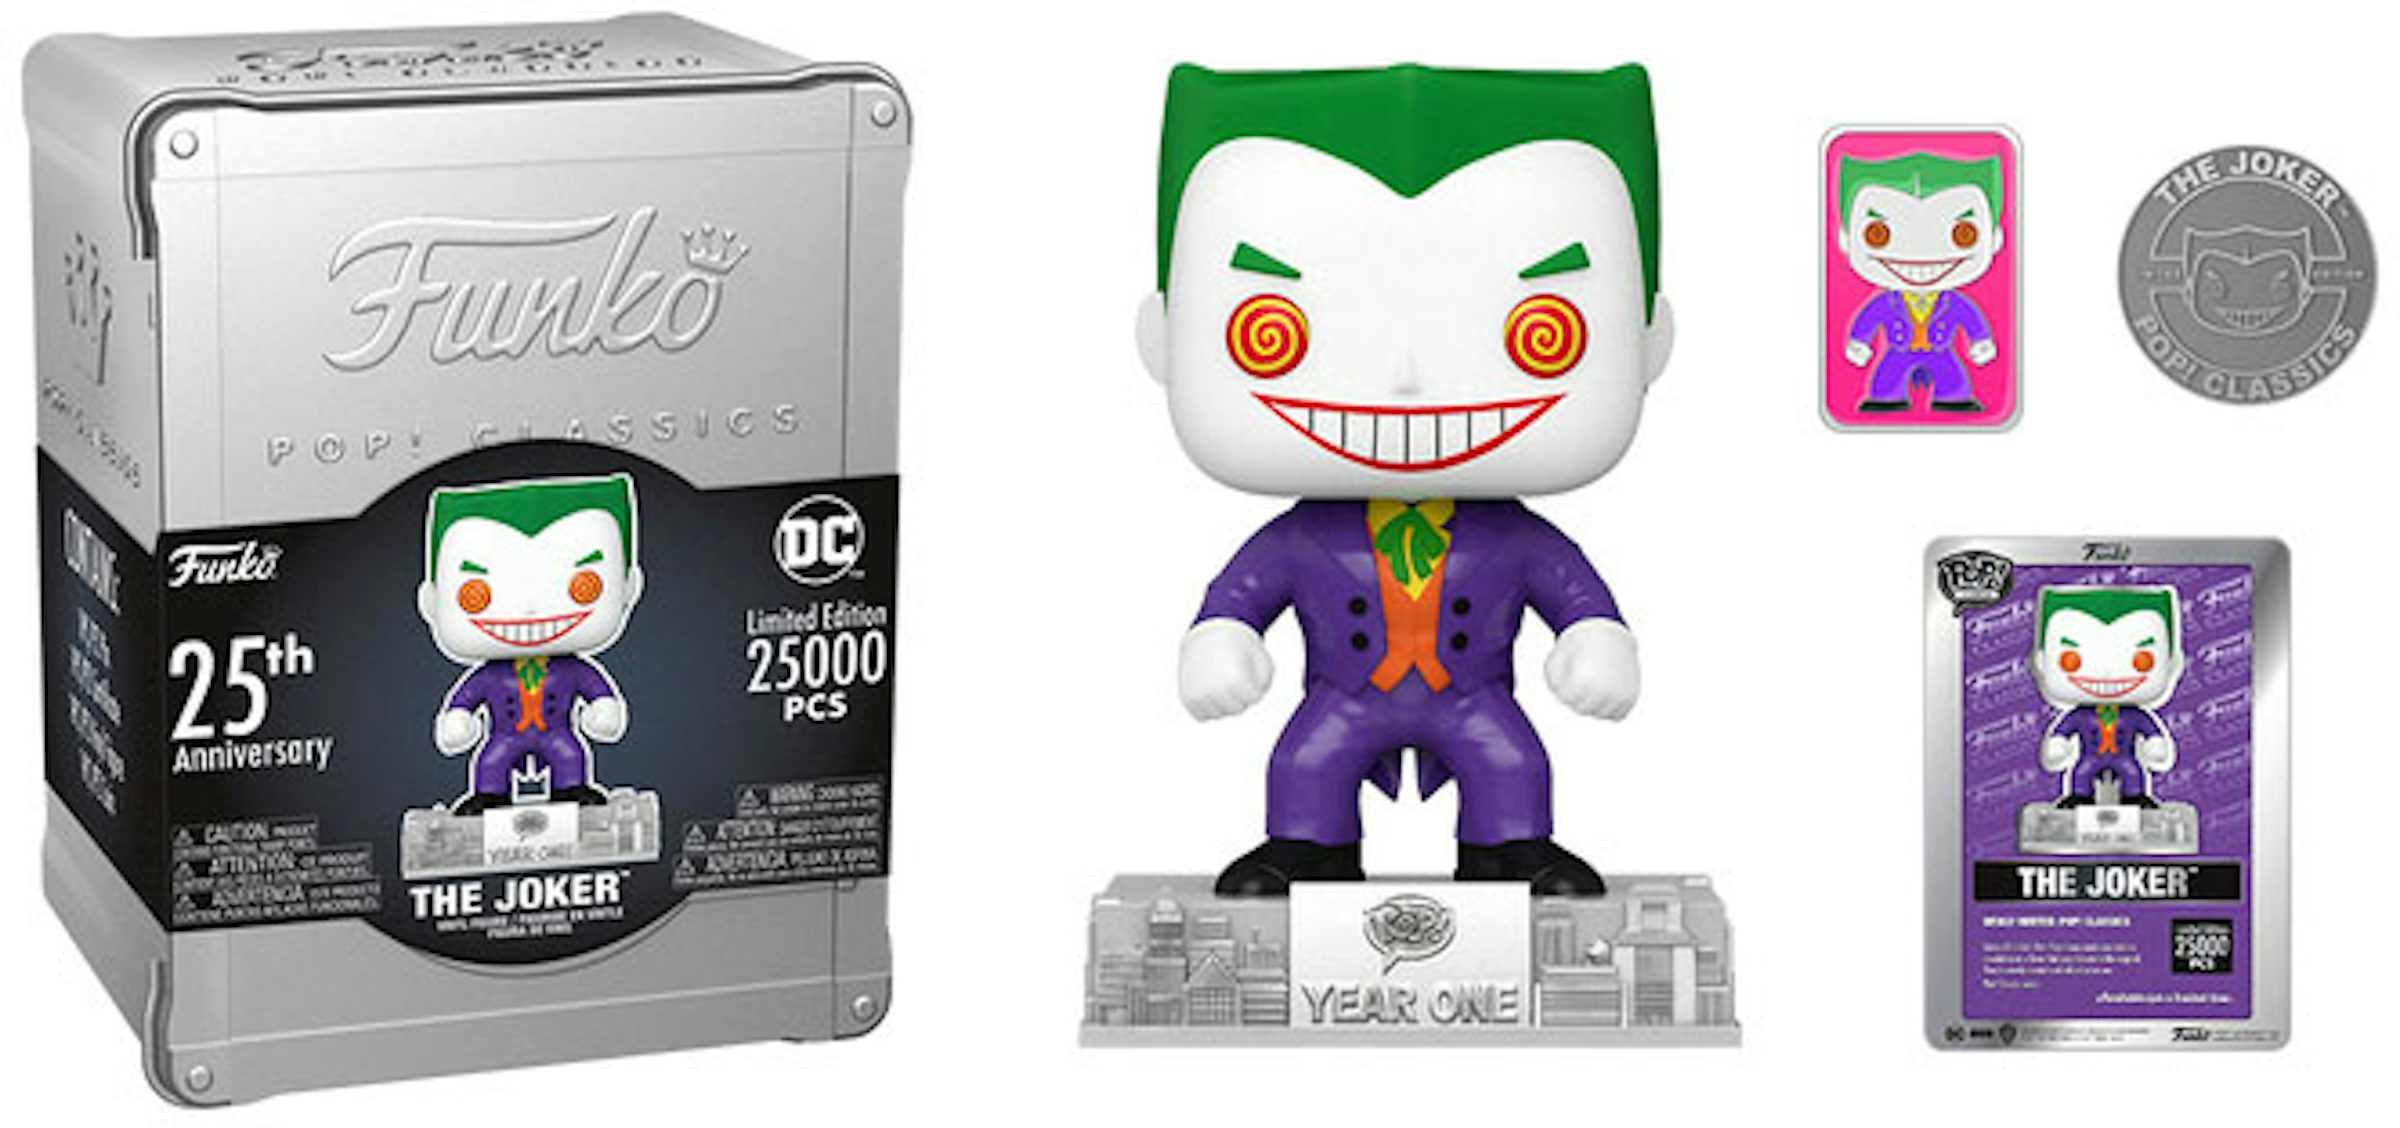 Funko Pop! Classics The Joker 25th Anniversary (LE 25000) Figure